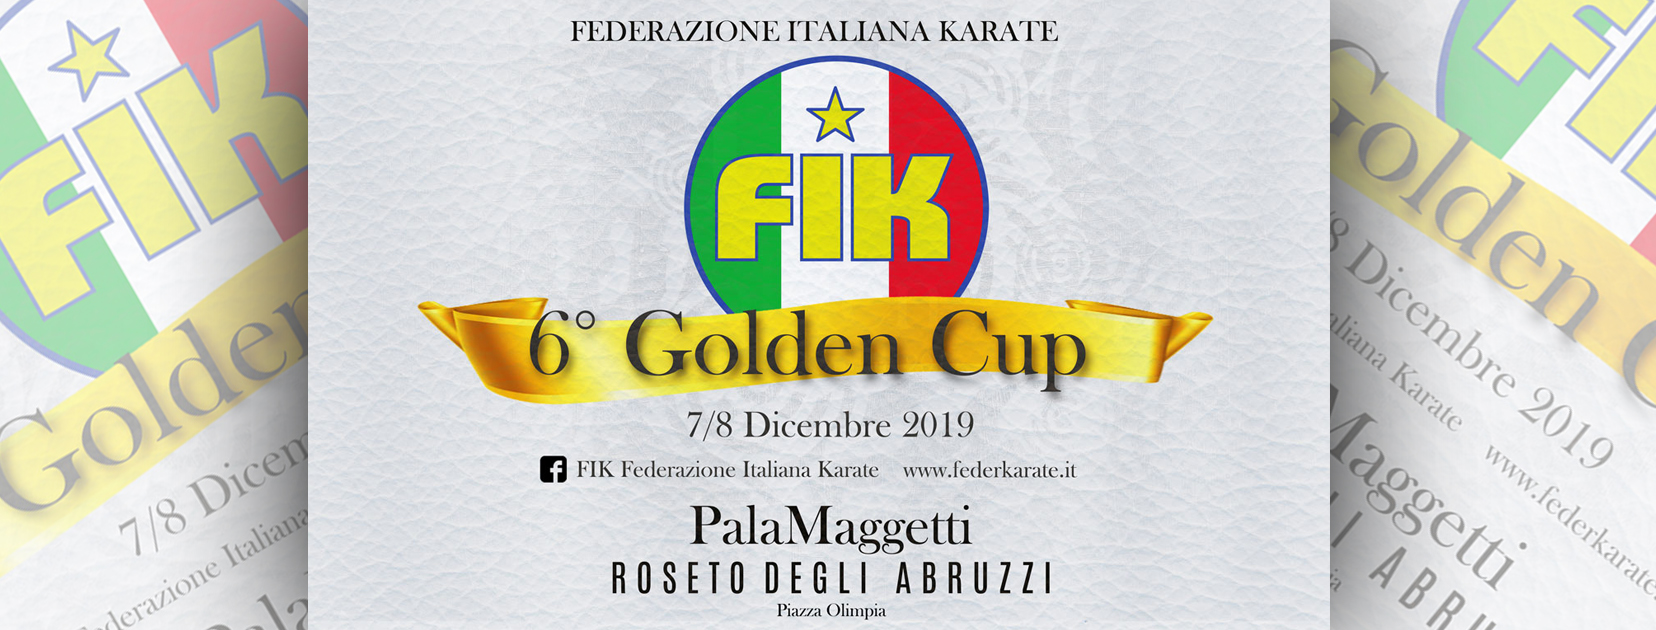 6° Golden Cup